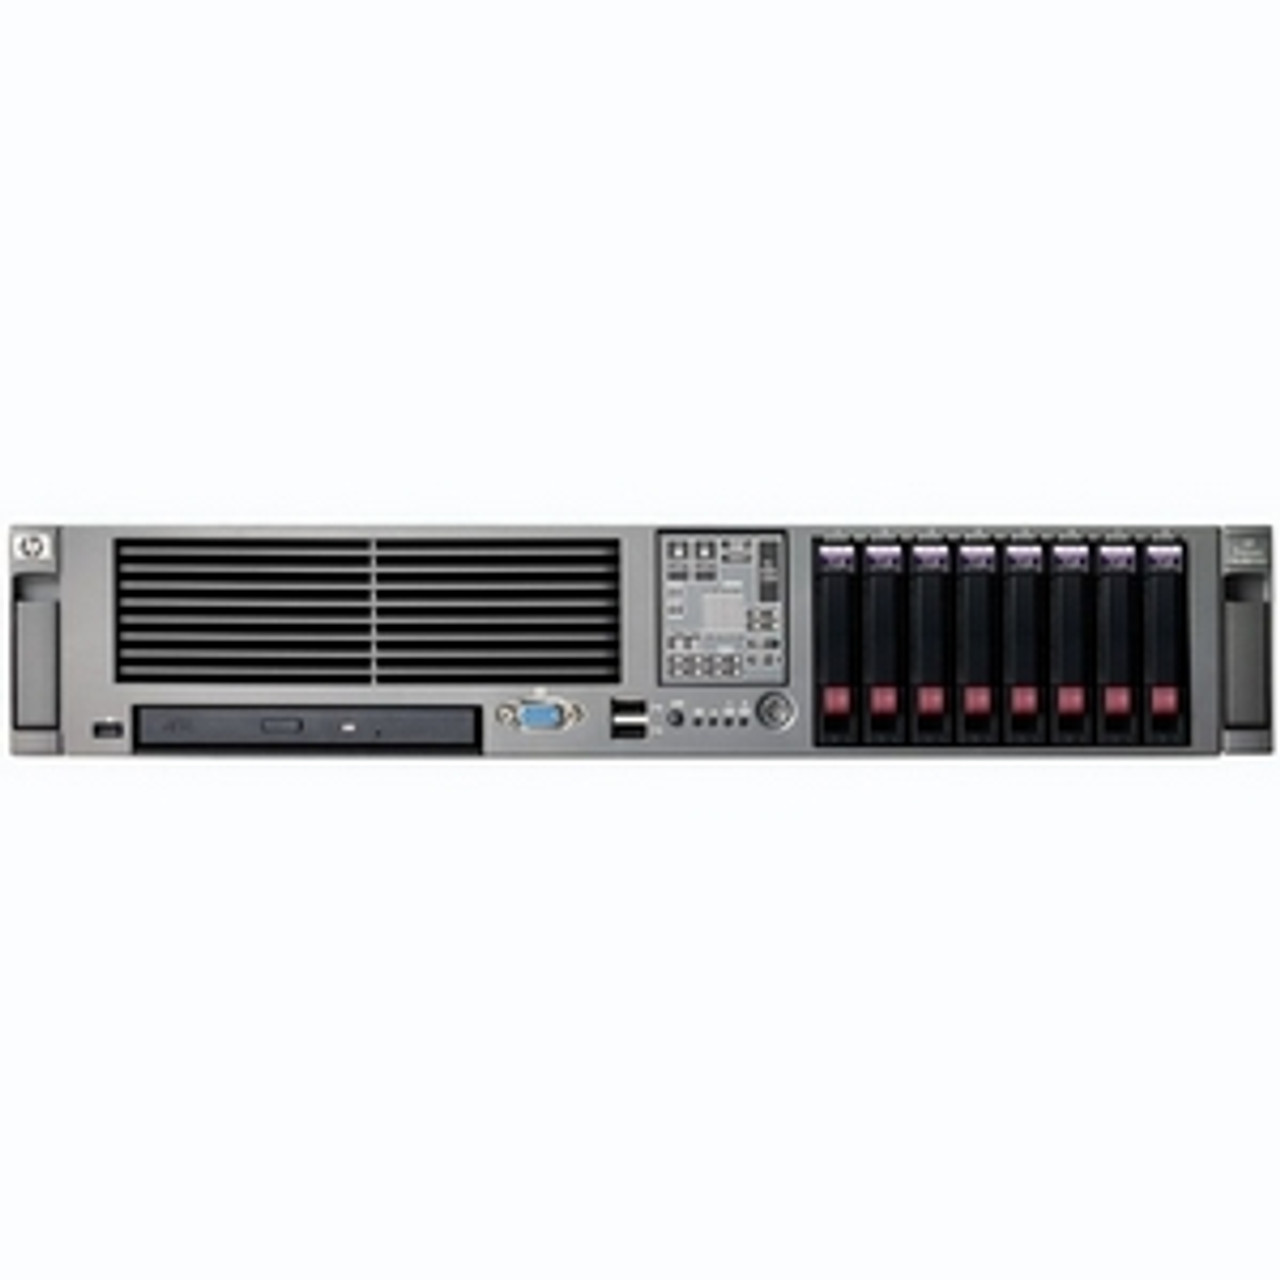 AG453A - HP ProLiant DL380 G5 Storage Server Base unit DAS version